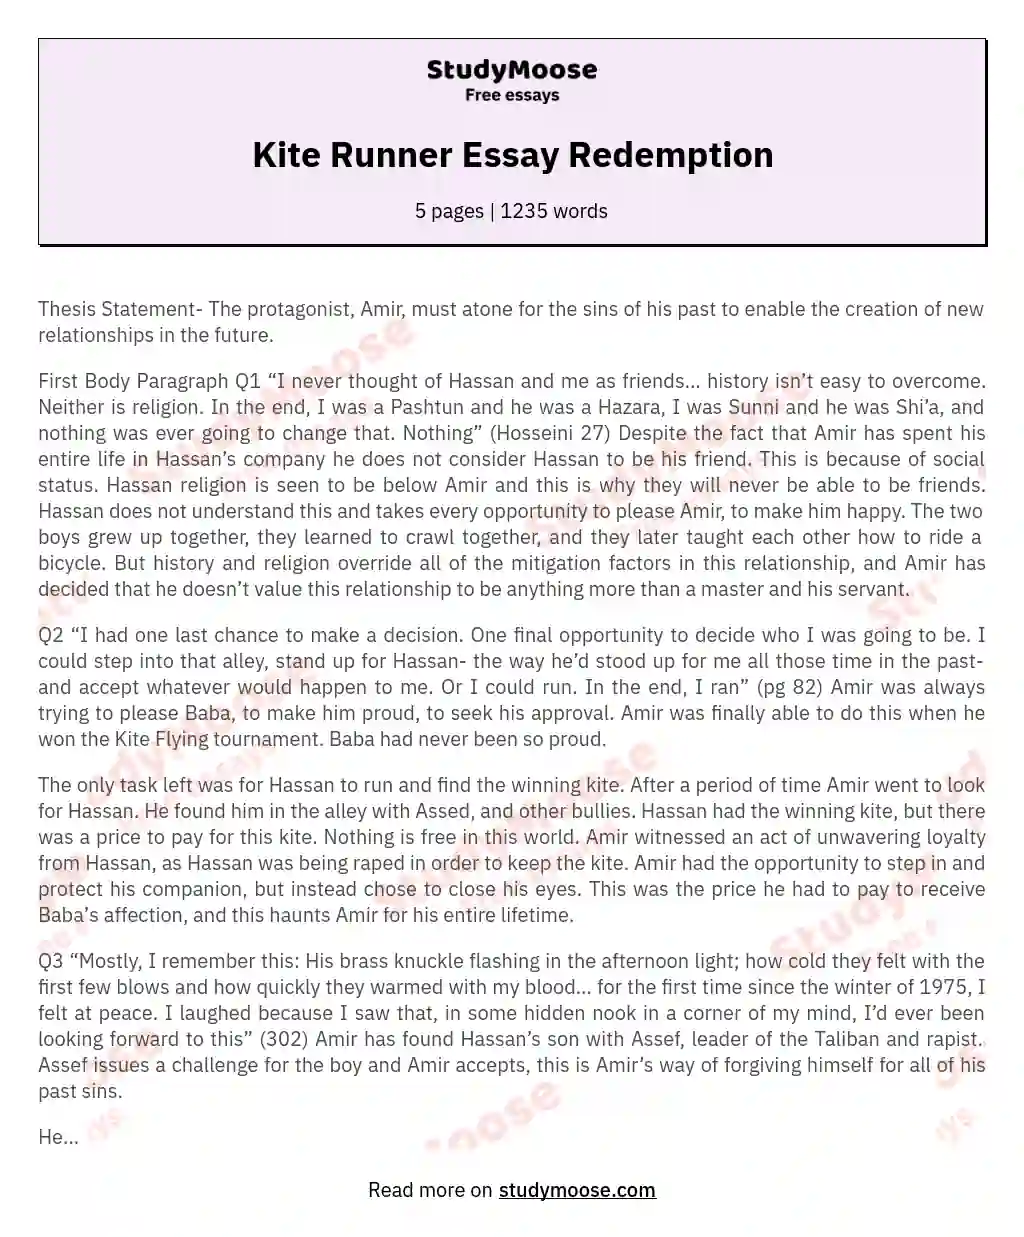 Kite Runner Essay Redemption